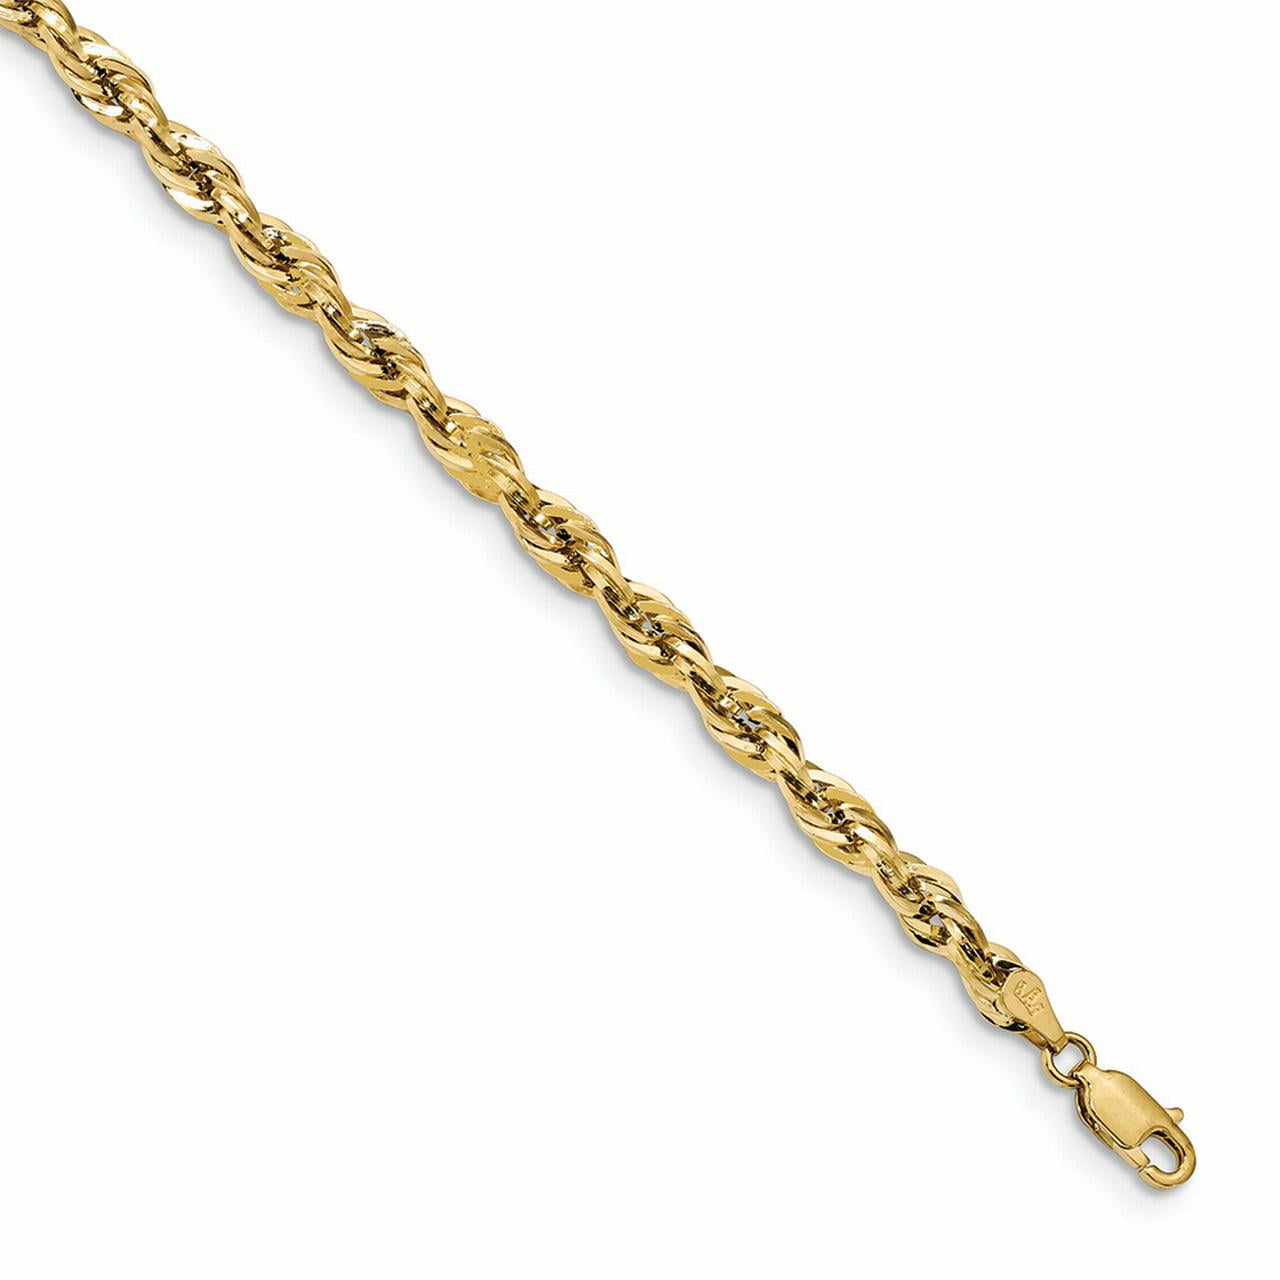 10K White Gold bracelet Bangle 7 in 4.25 mm Polished